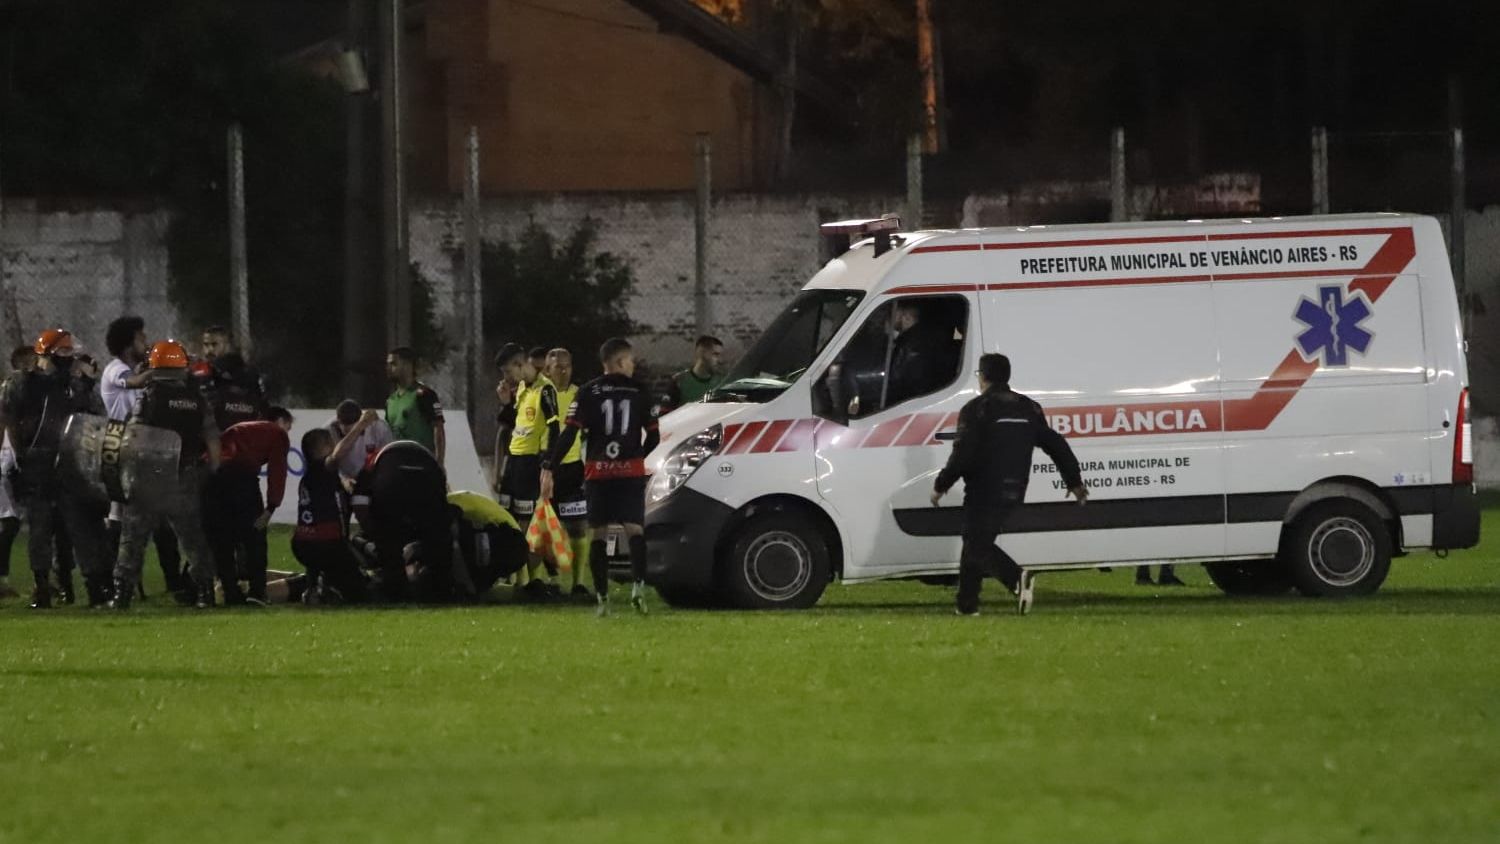 Jogador da 2ª divisão do Gauchão vai para prisão após chutar árbitro -  Esporte Jundiaí